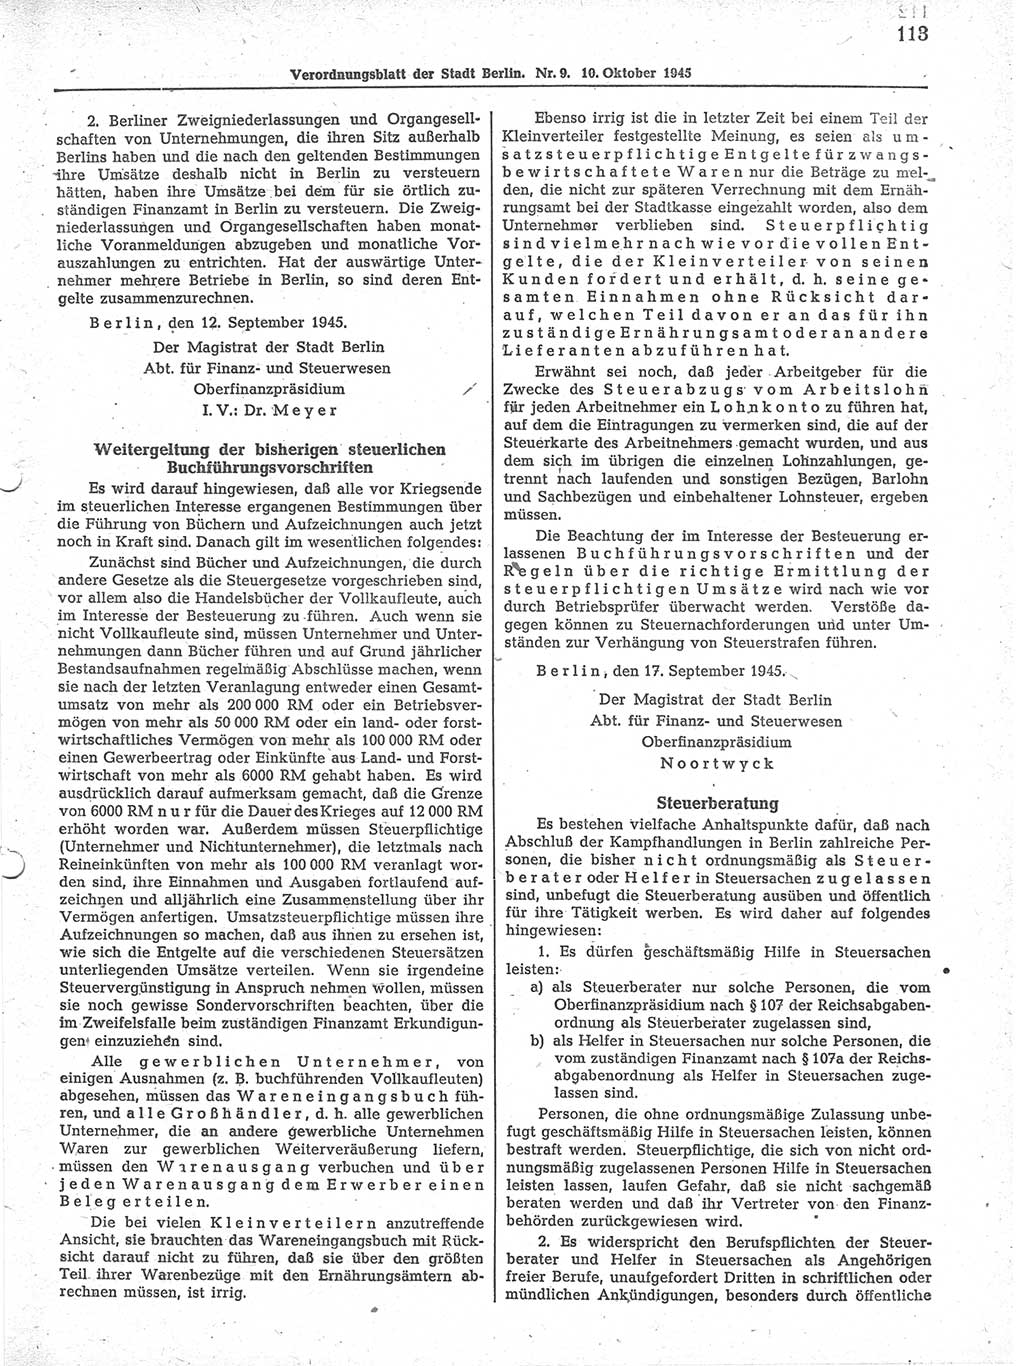 Verordnungsblatt (VOBl.) der Stadt Berlin 1945, Seite 113 (VOBl. Bln. 1945, S. 113)